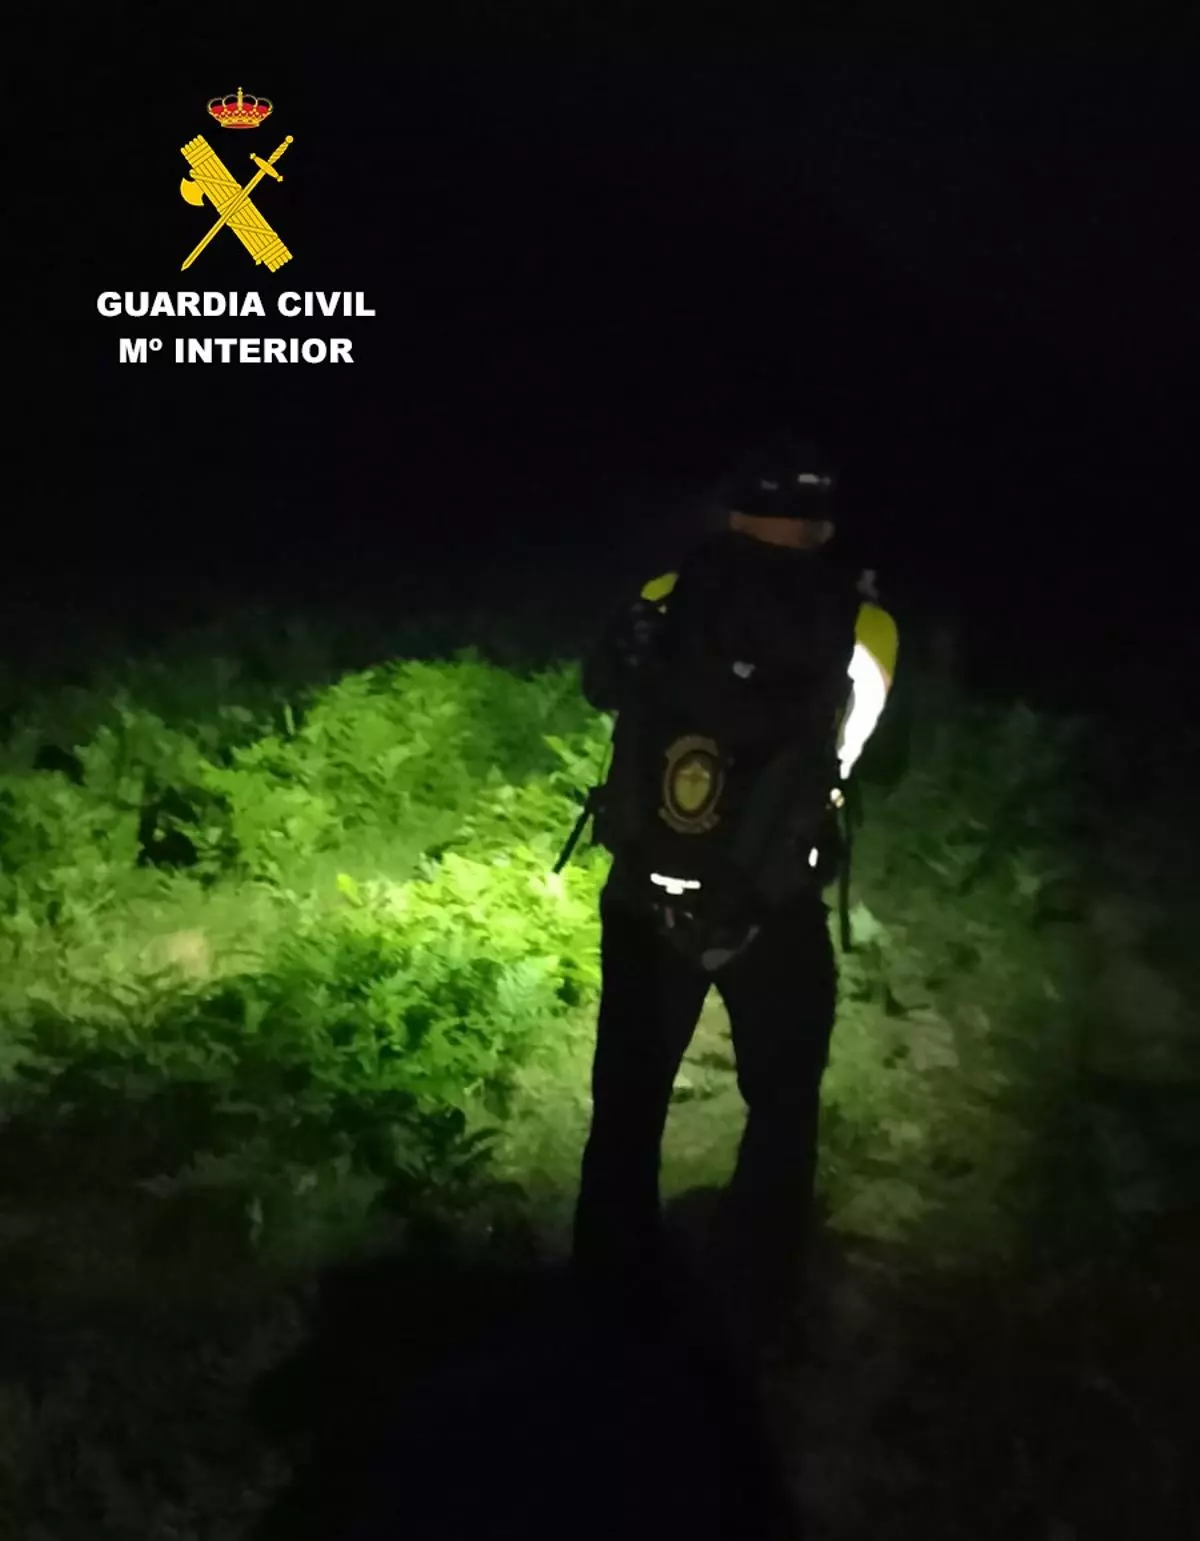 La guardia civil rescata a un senderista en el municipio de Aller tras toda la noche de búsqueda